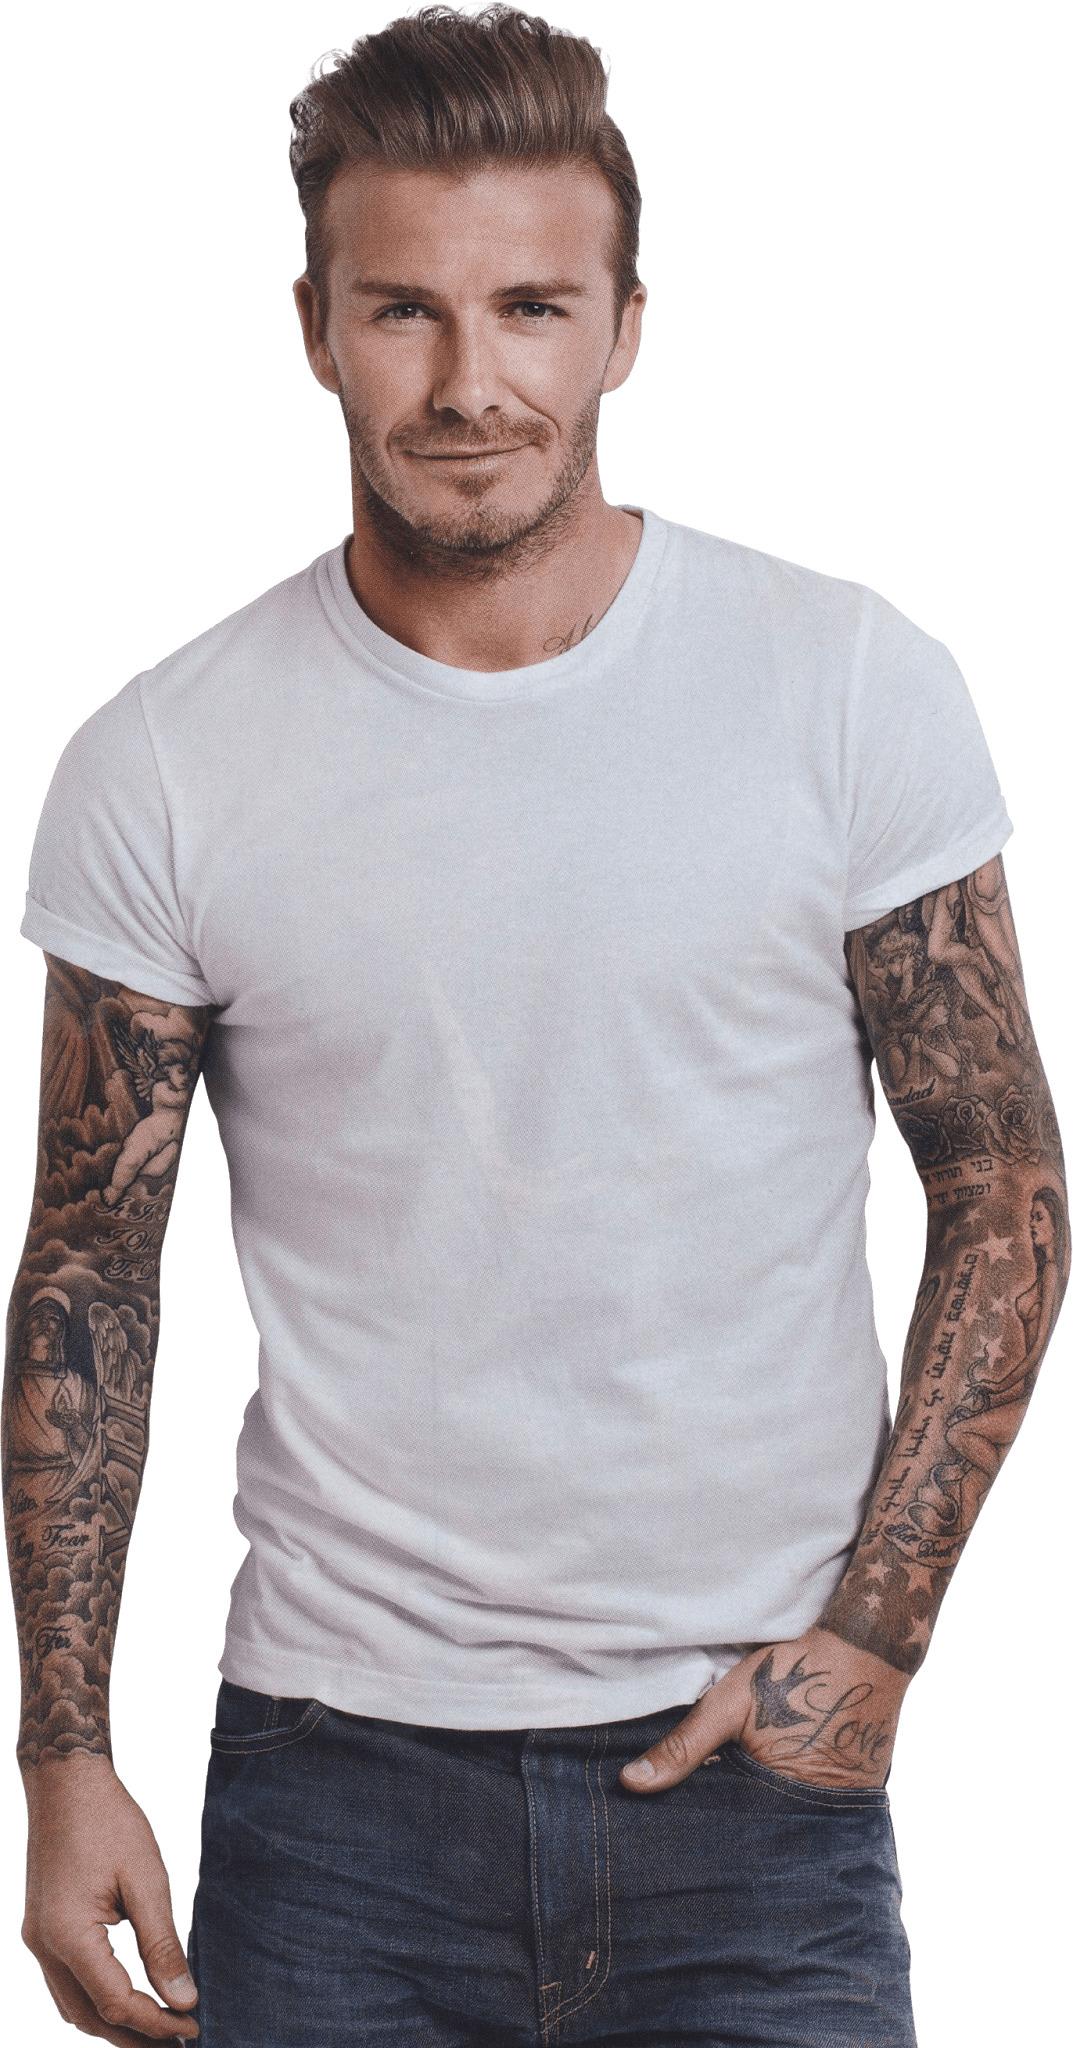 David Beckham Tattoos png transparent